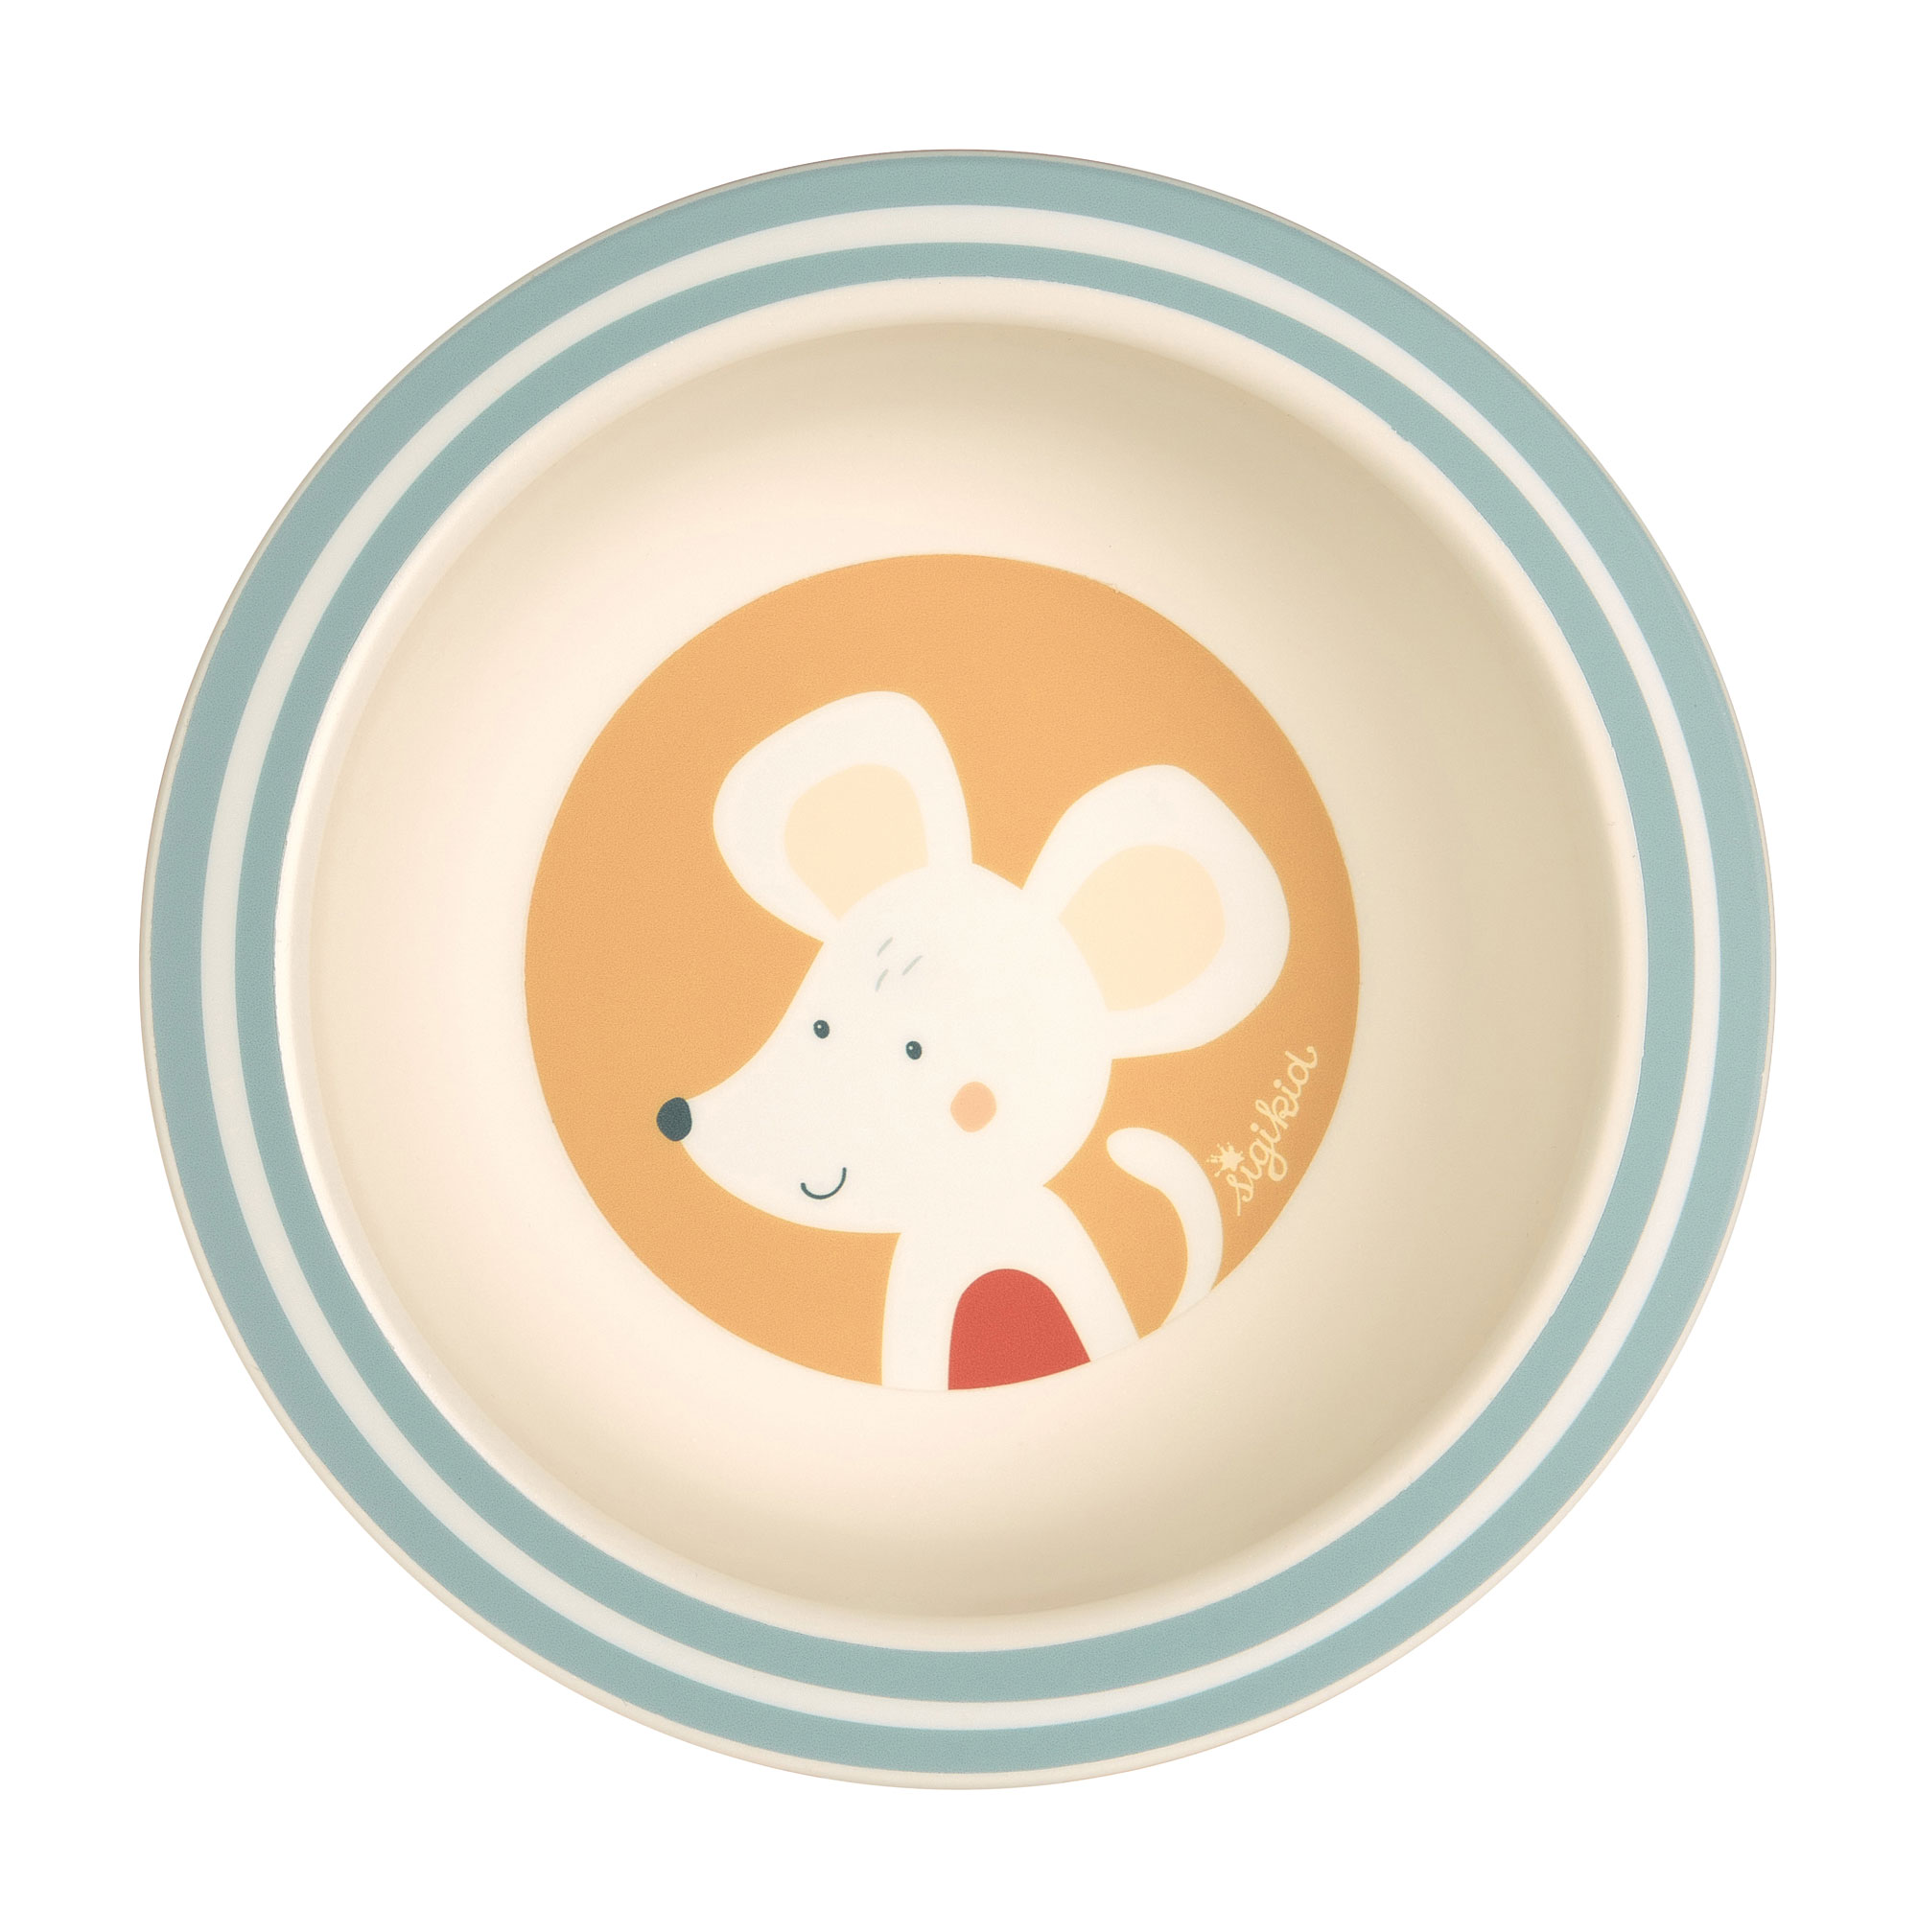 Children's bowl mouse, "4 friends"